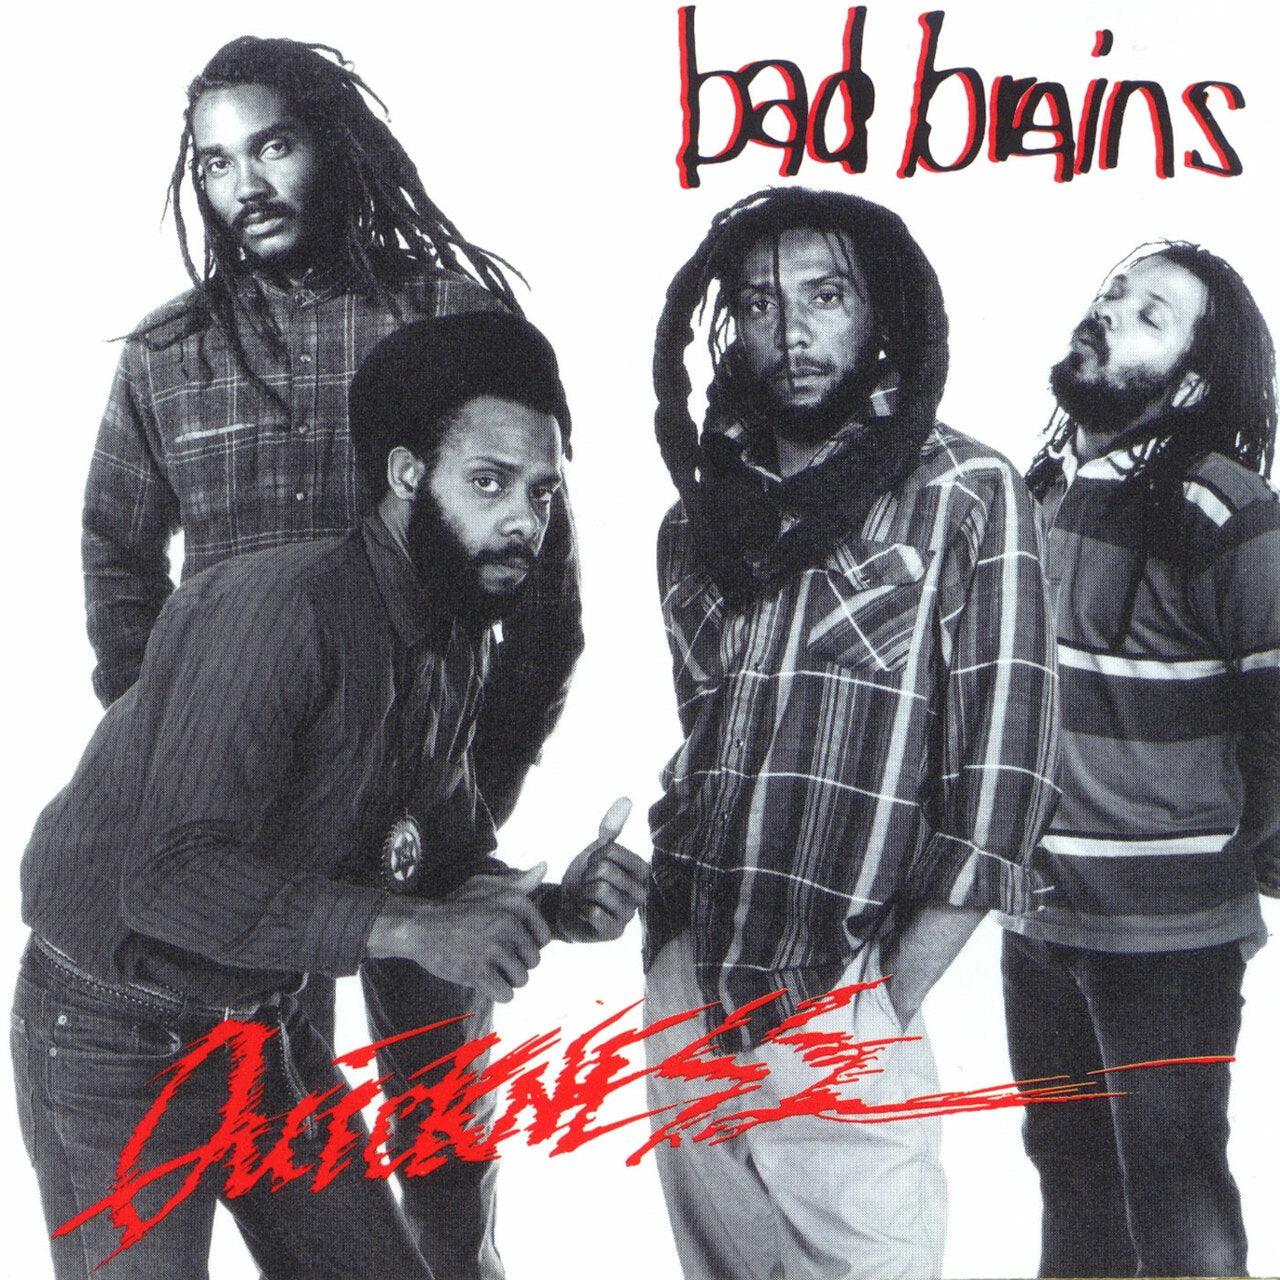 Bad Brains "Quickness" 12" Vinyl